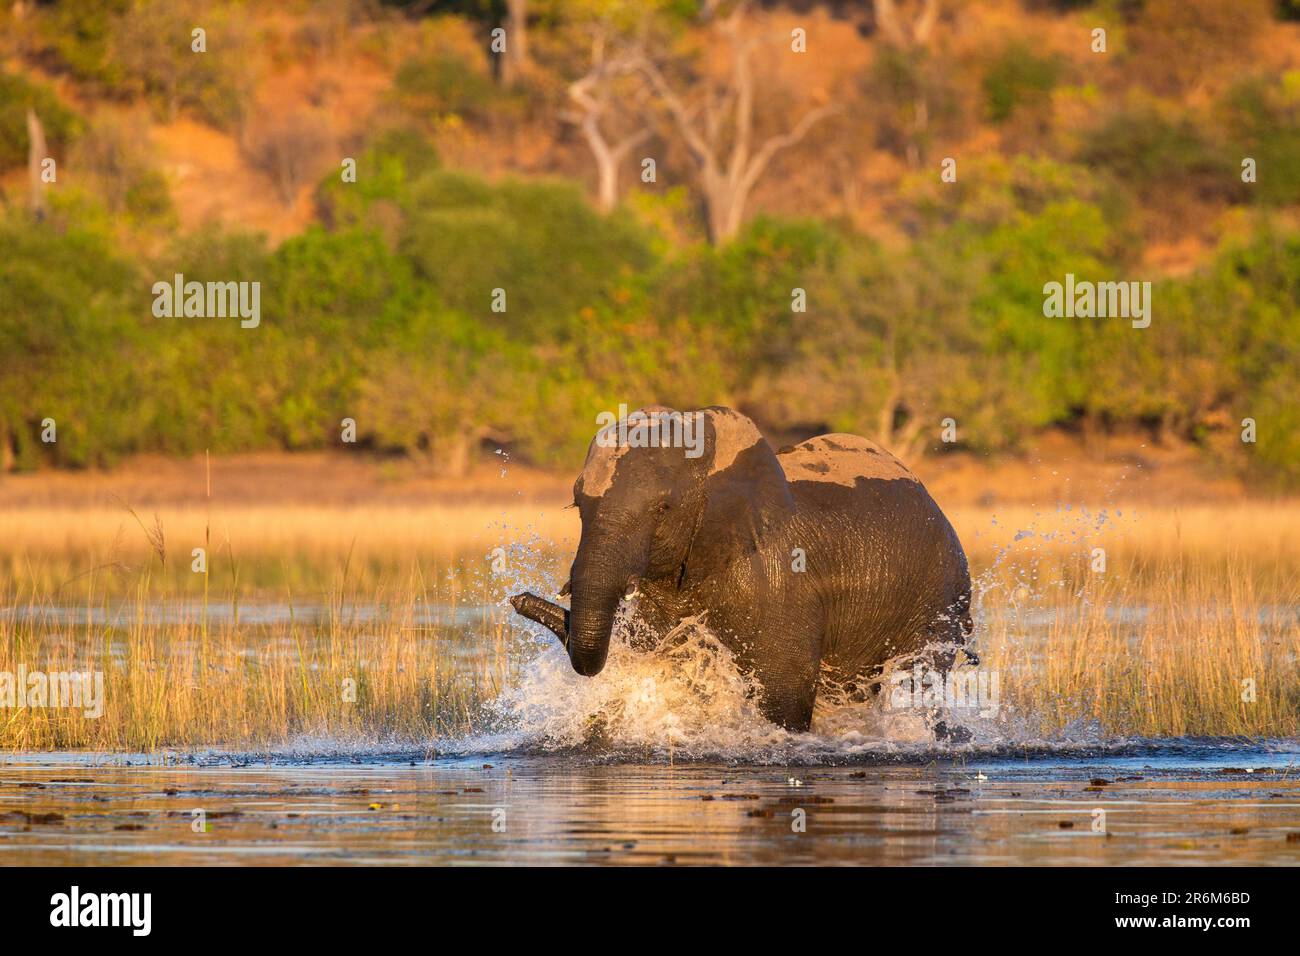 African elephant (Loxodonta africana), Chobe National Park, Botswana, Africa Stock Photo